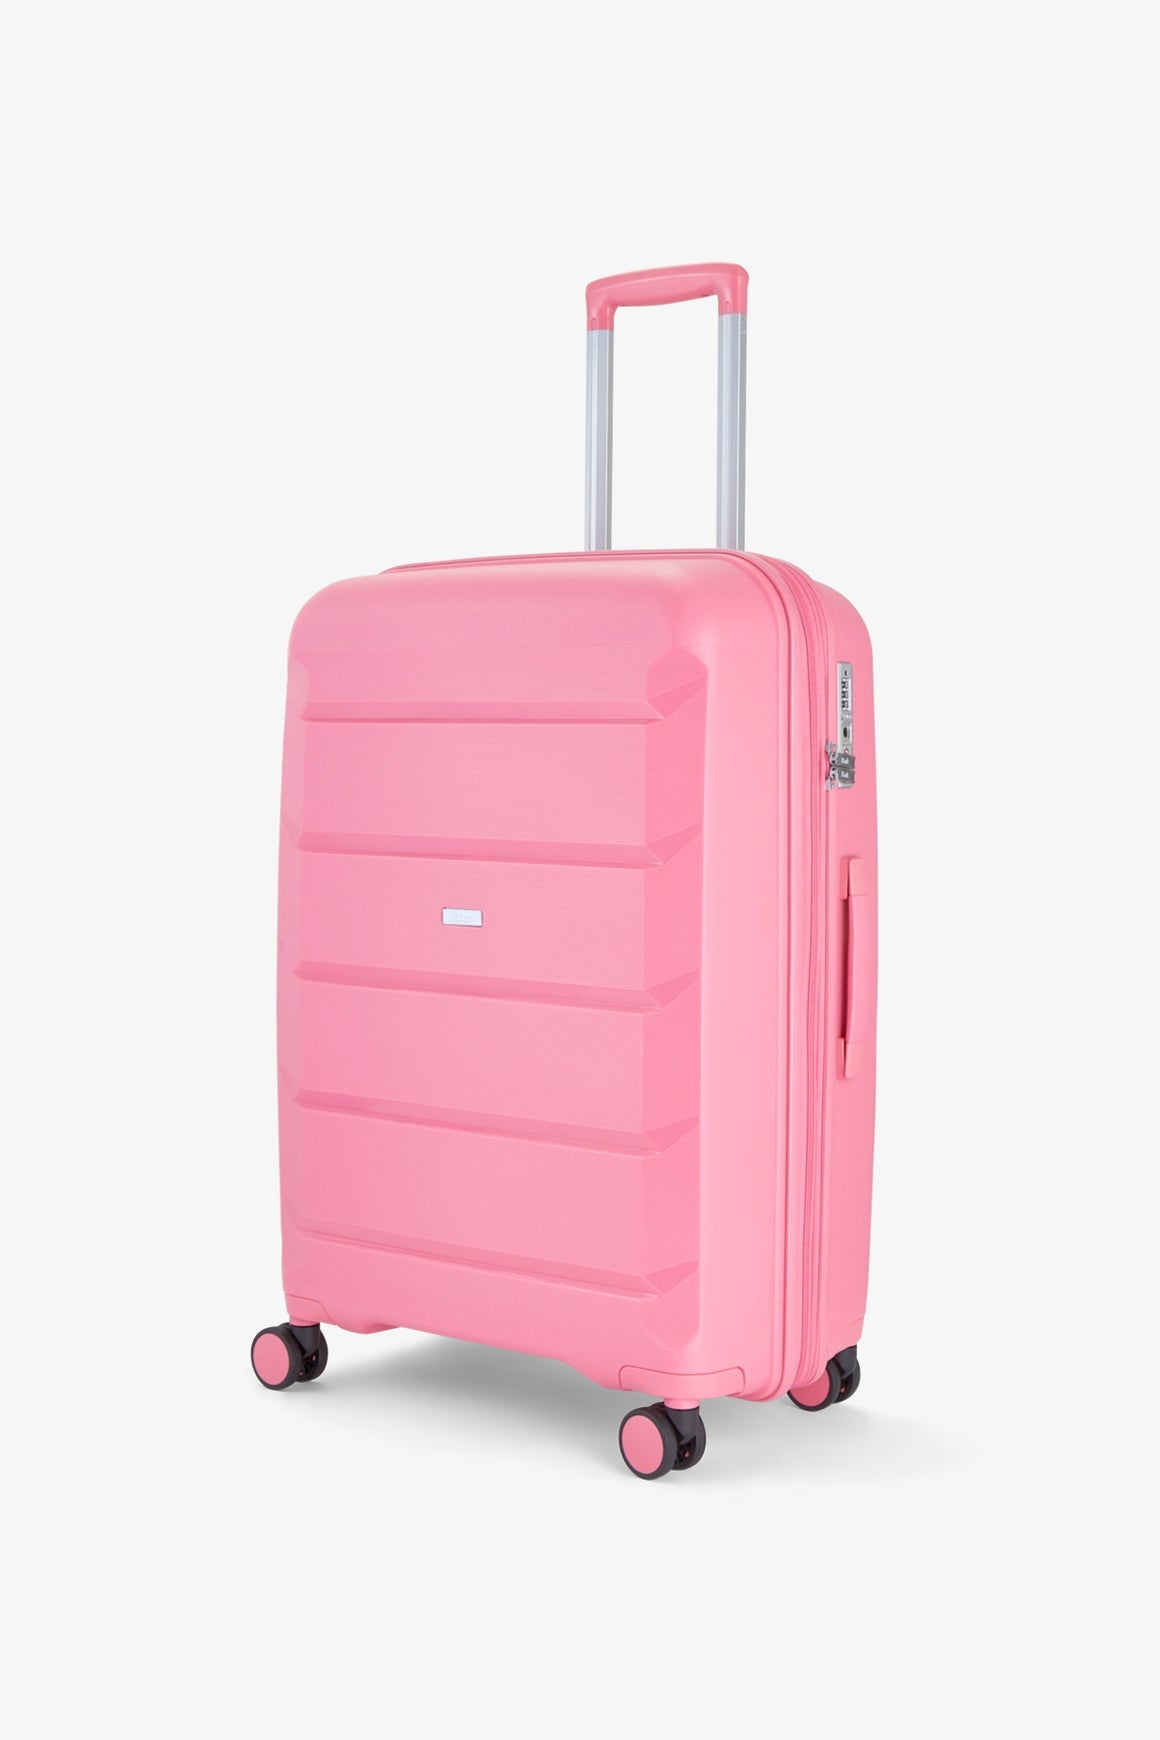 Tulum Medium Suitcase